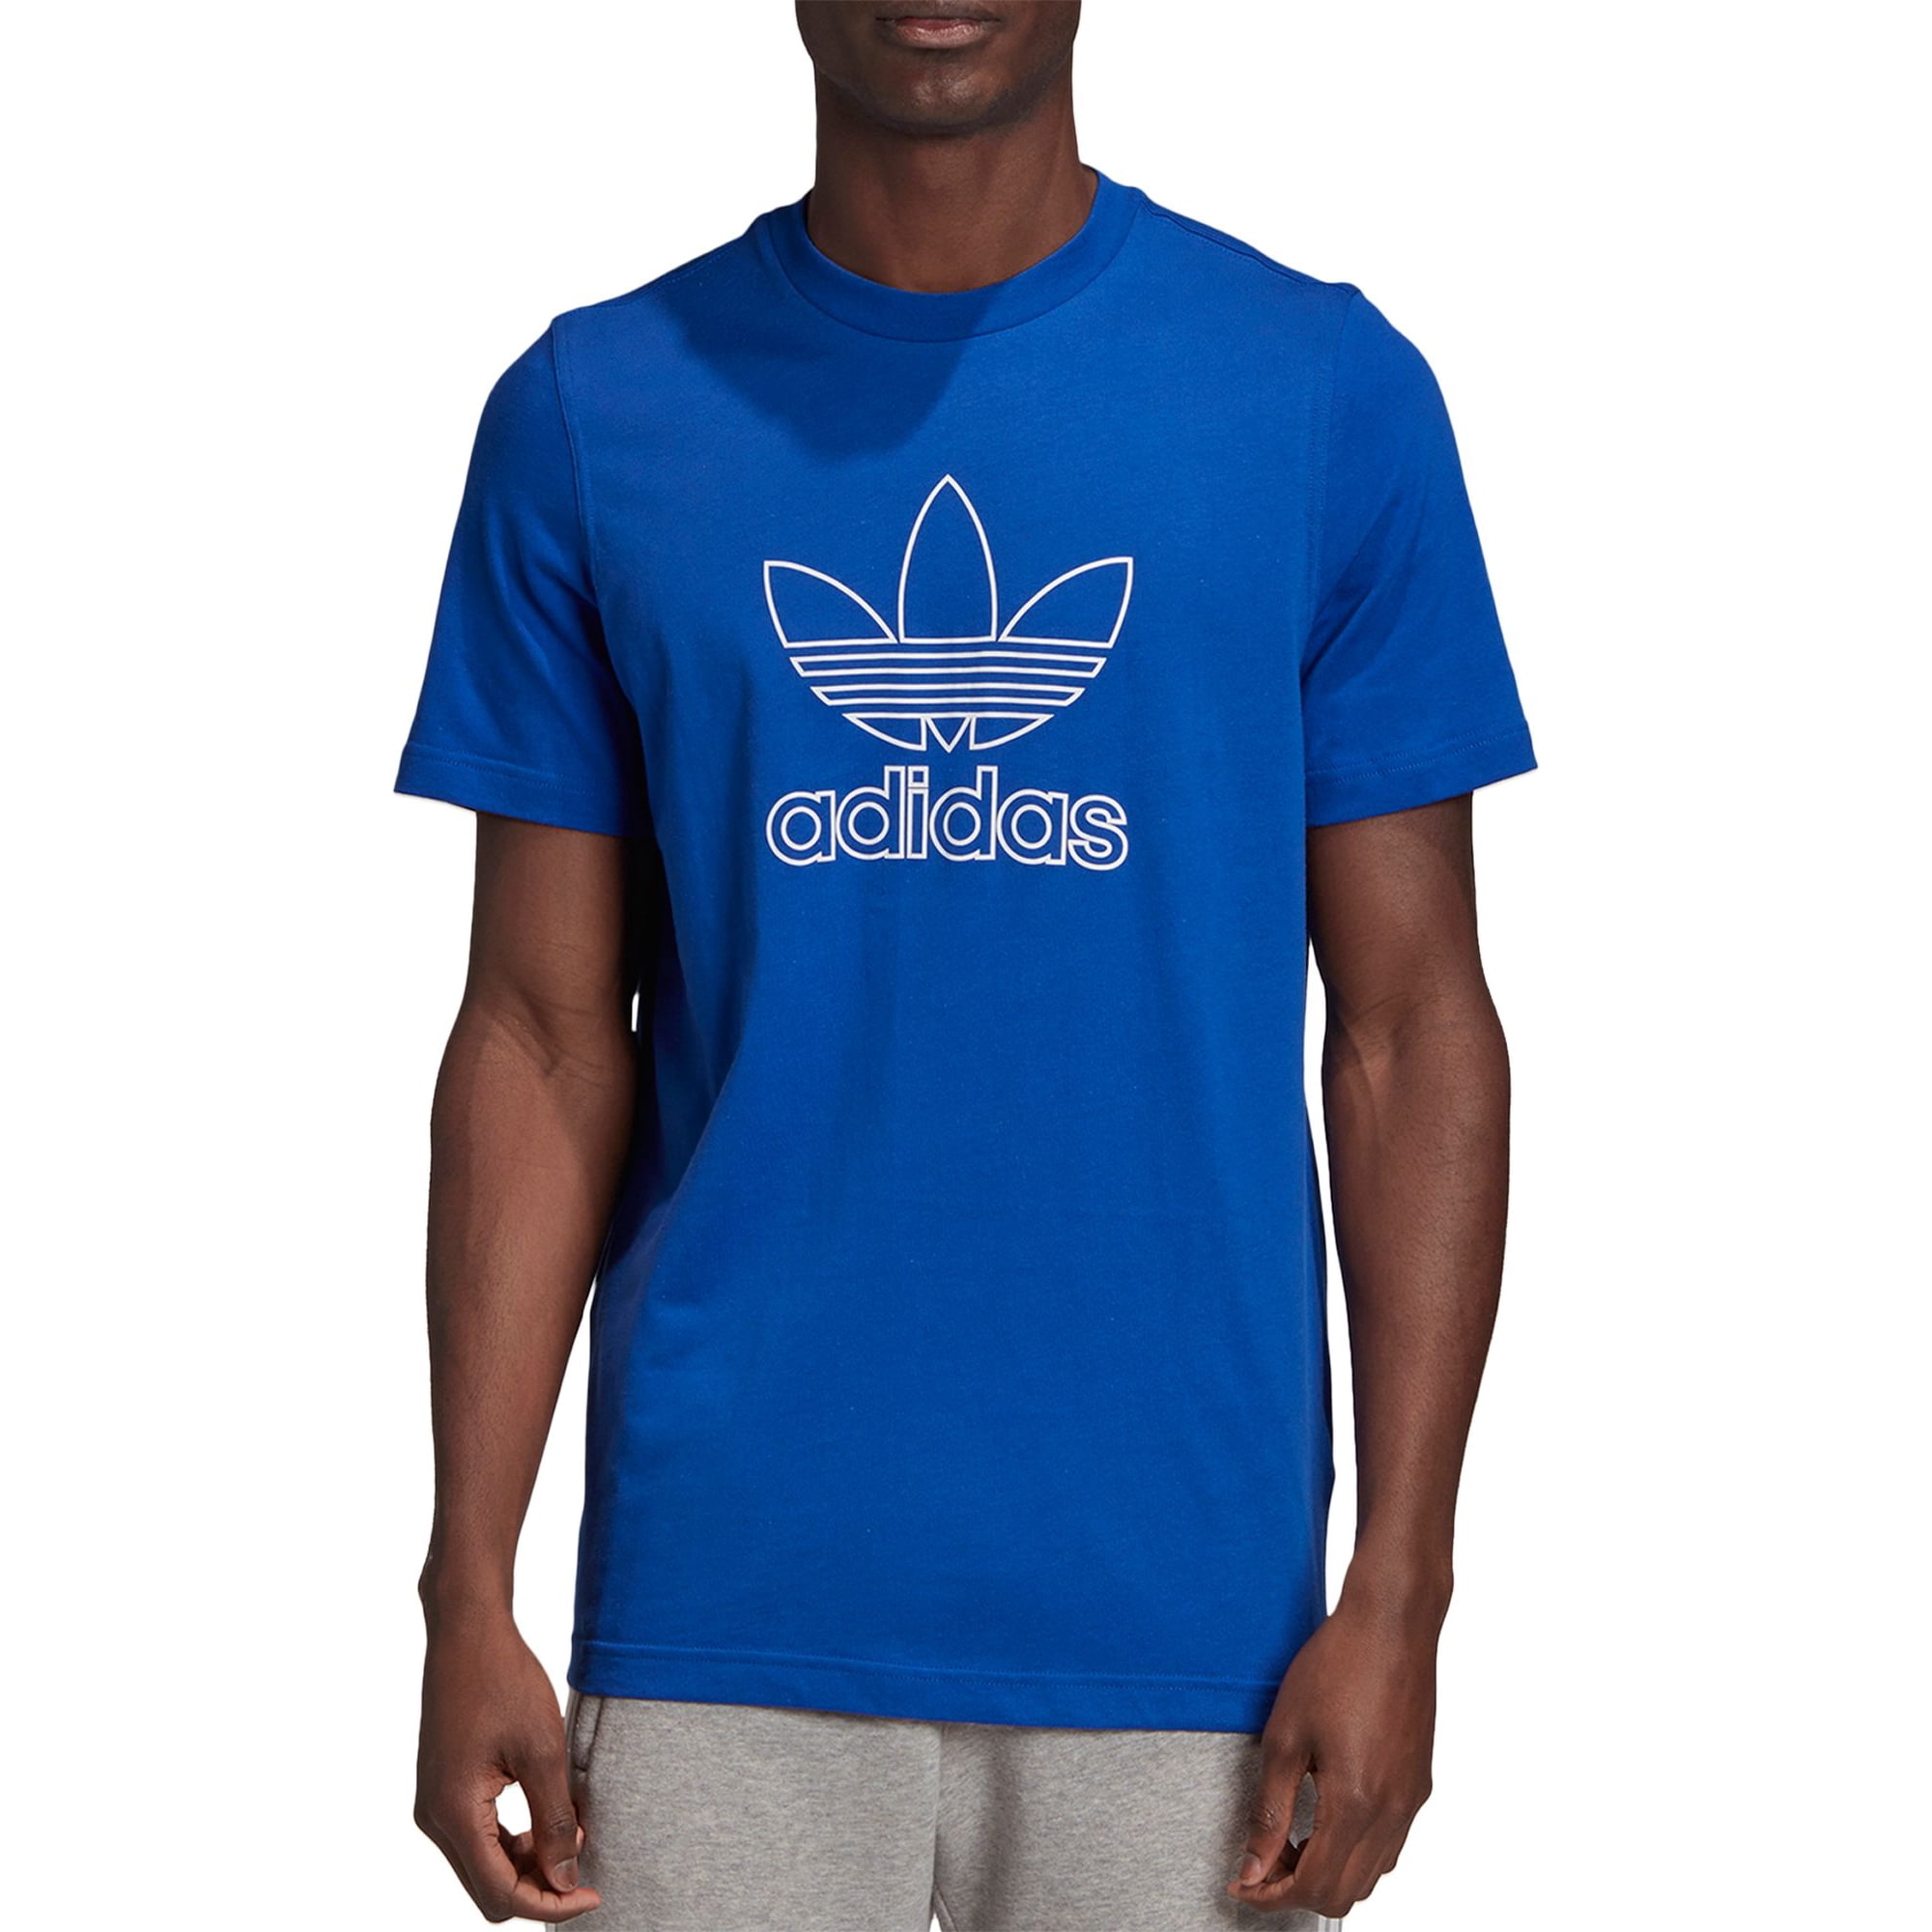 Originals Men's Outline Trefoil Logo Graphic T-Shirt, Team Royal Blue, Walmart.com